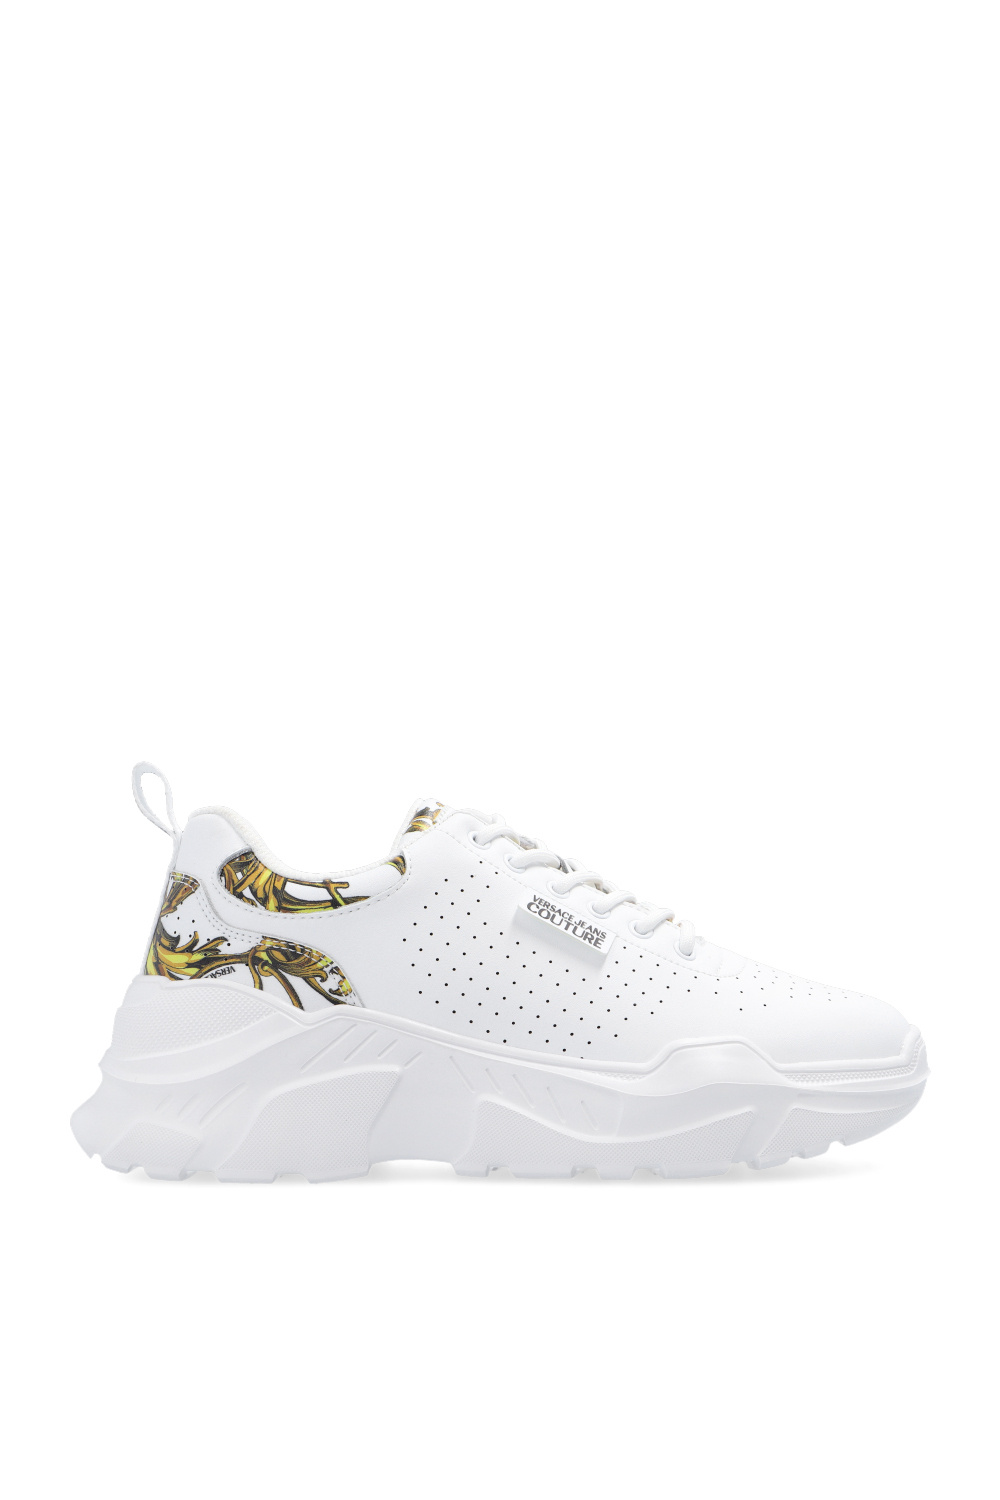 zapatillas de running Adidas pie cavo talla 48 blancas ‘Regalia Baroque’ printed sneakers